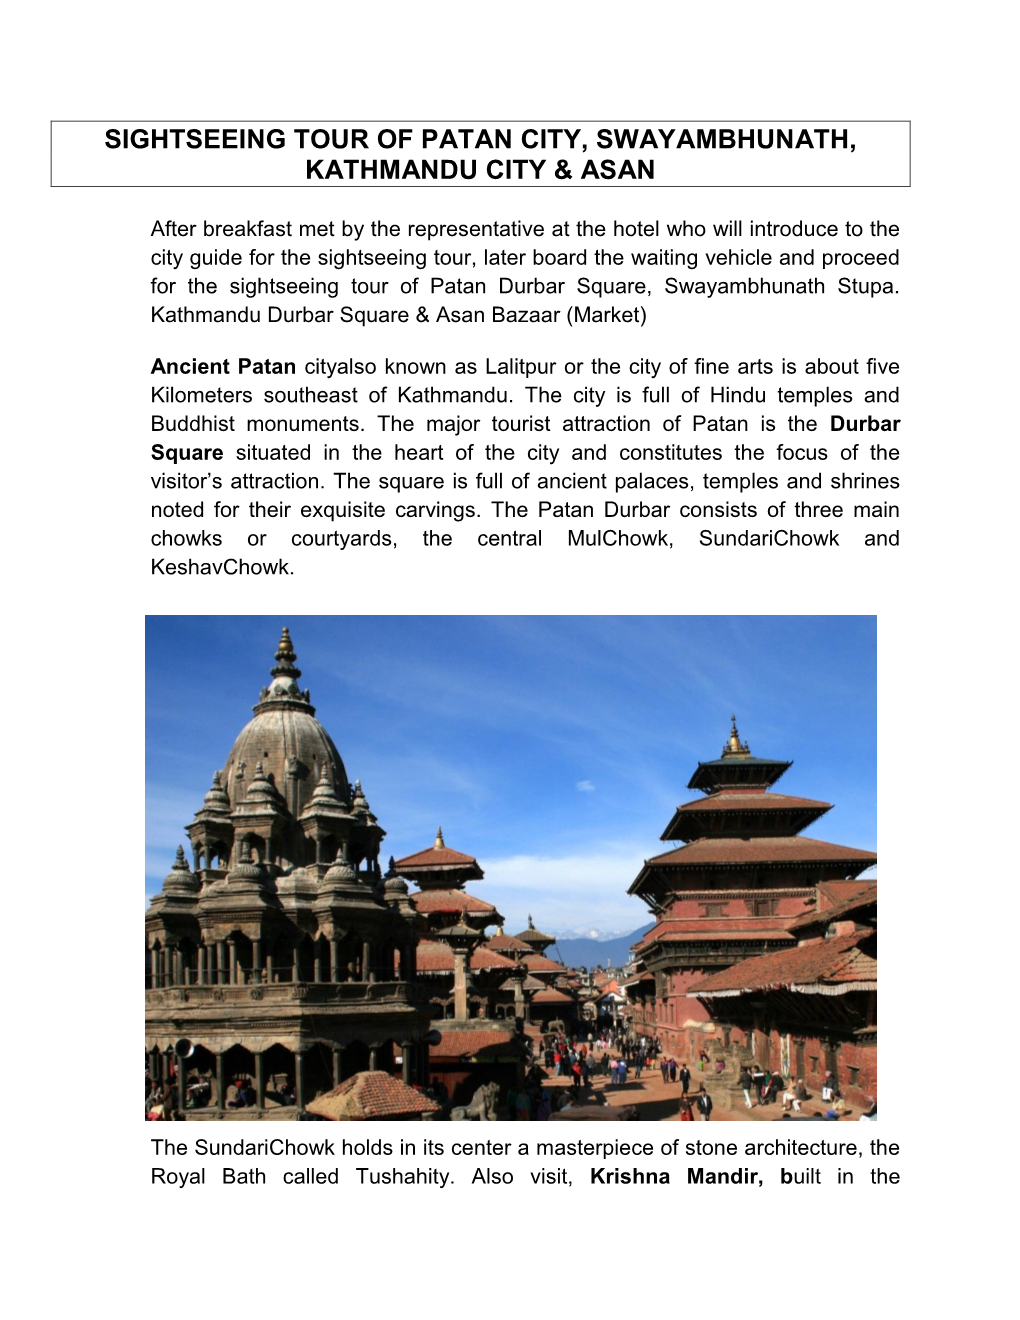 Sightseeing Tour of Patan City, Swayambhunath, Kathmandu City & Asan